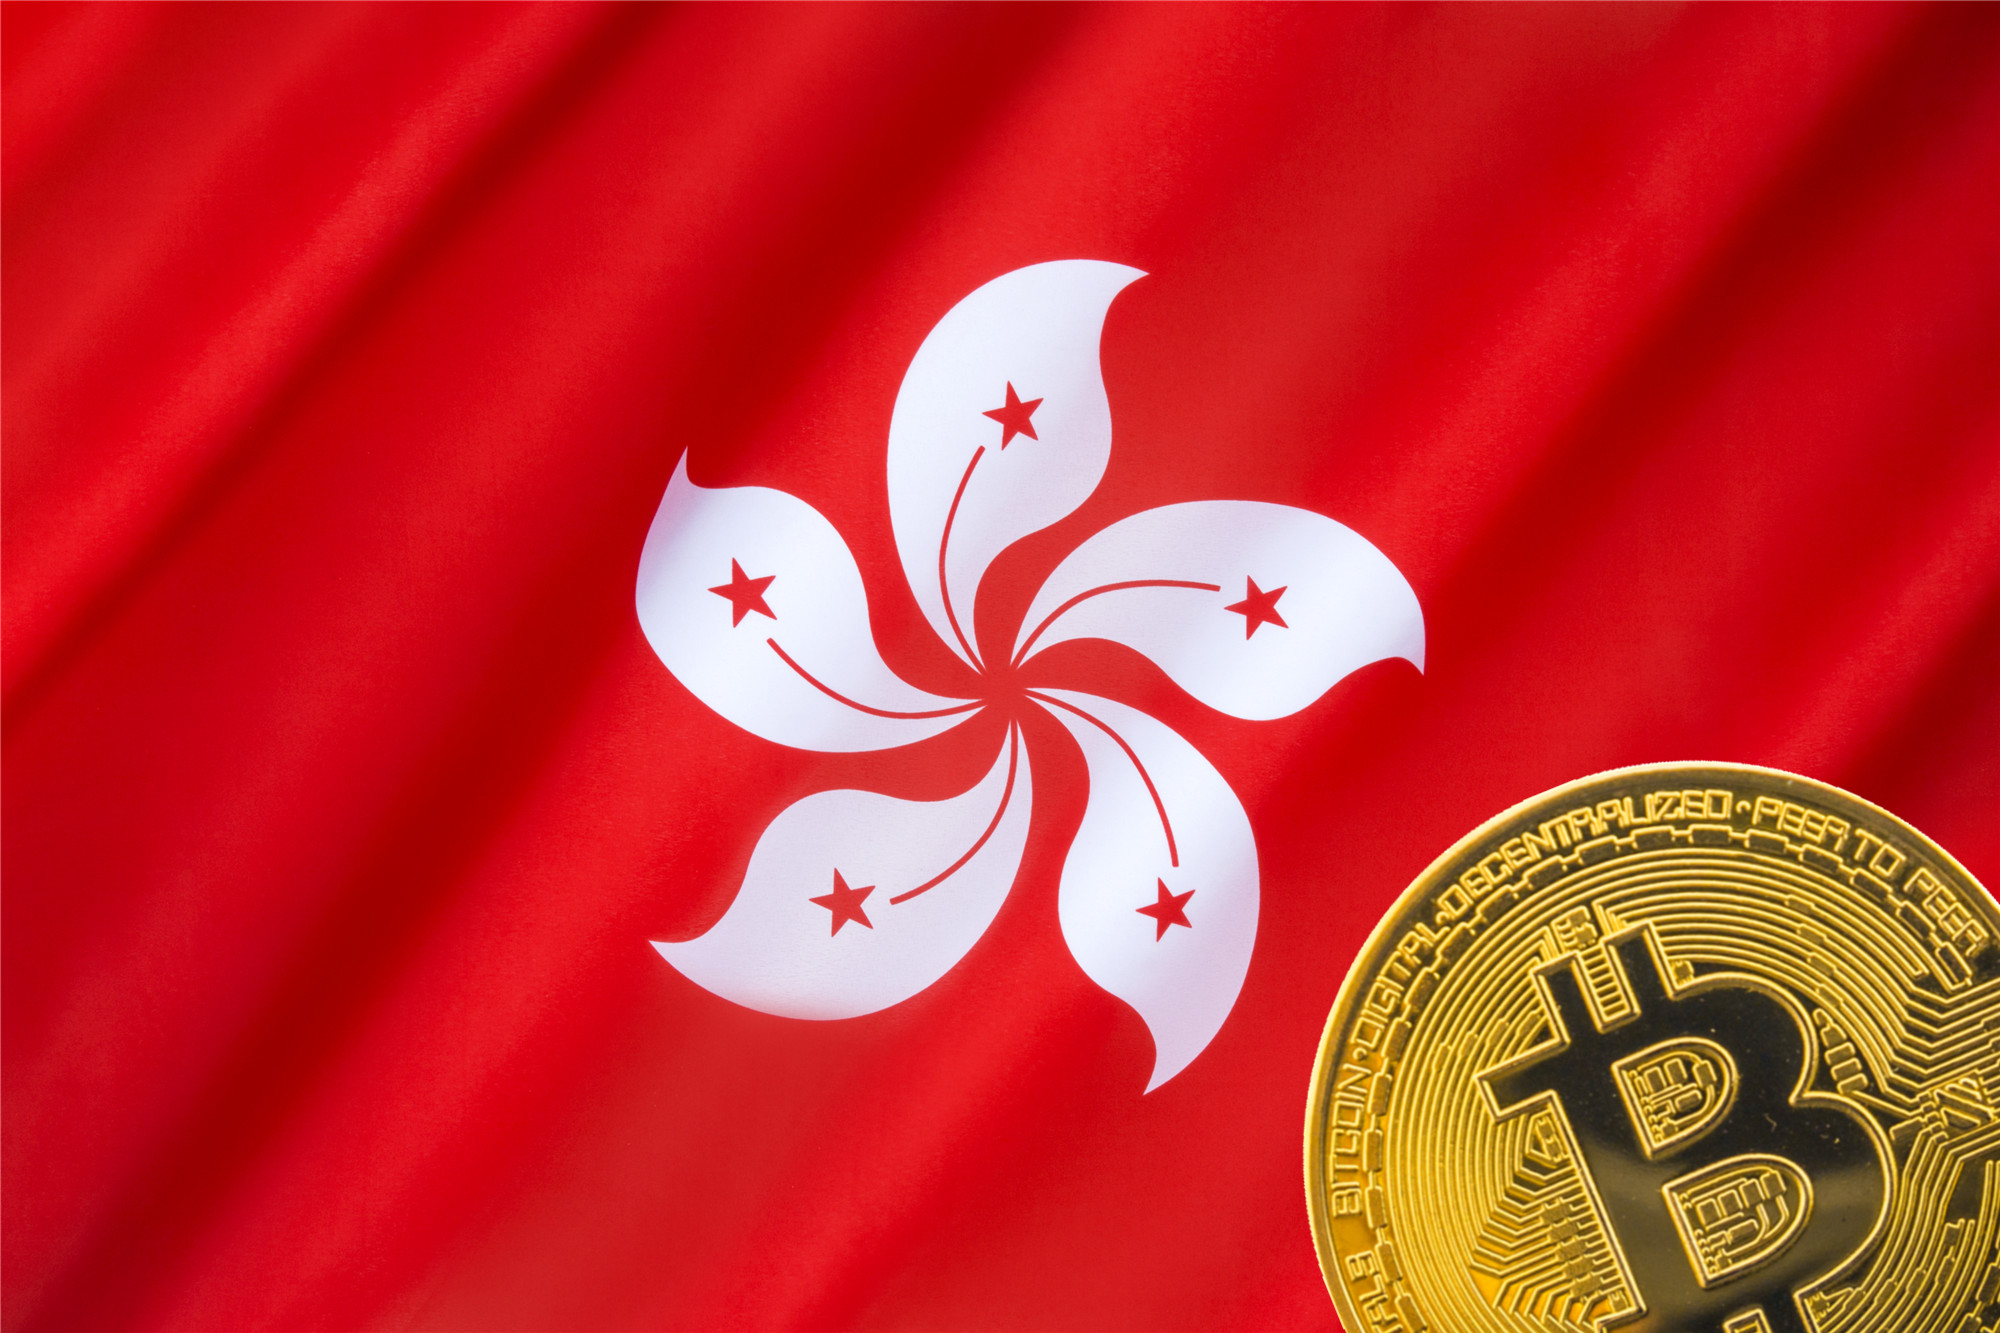 Hongkong ist die kryptowährungsfähigste Jurisdiktion der Welt: Forex Suggest